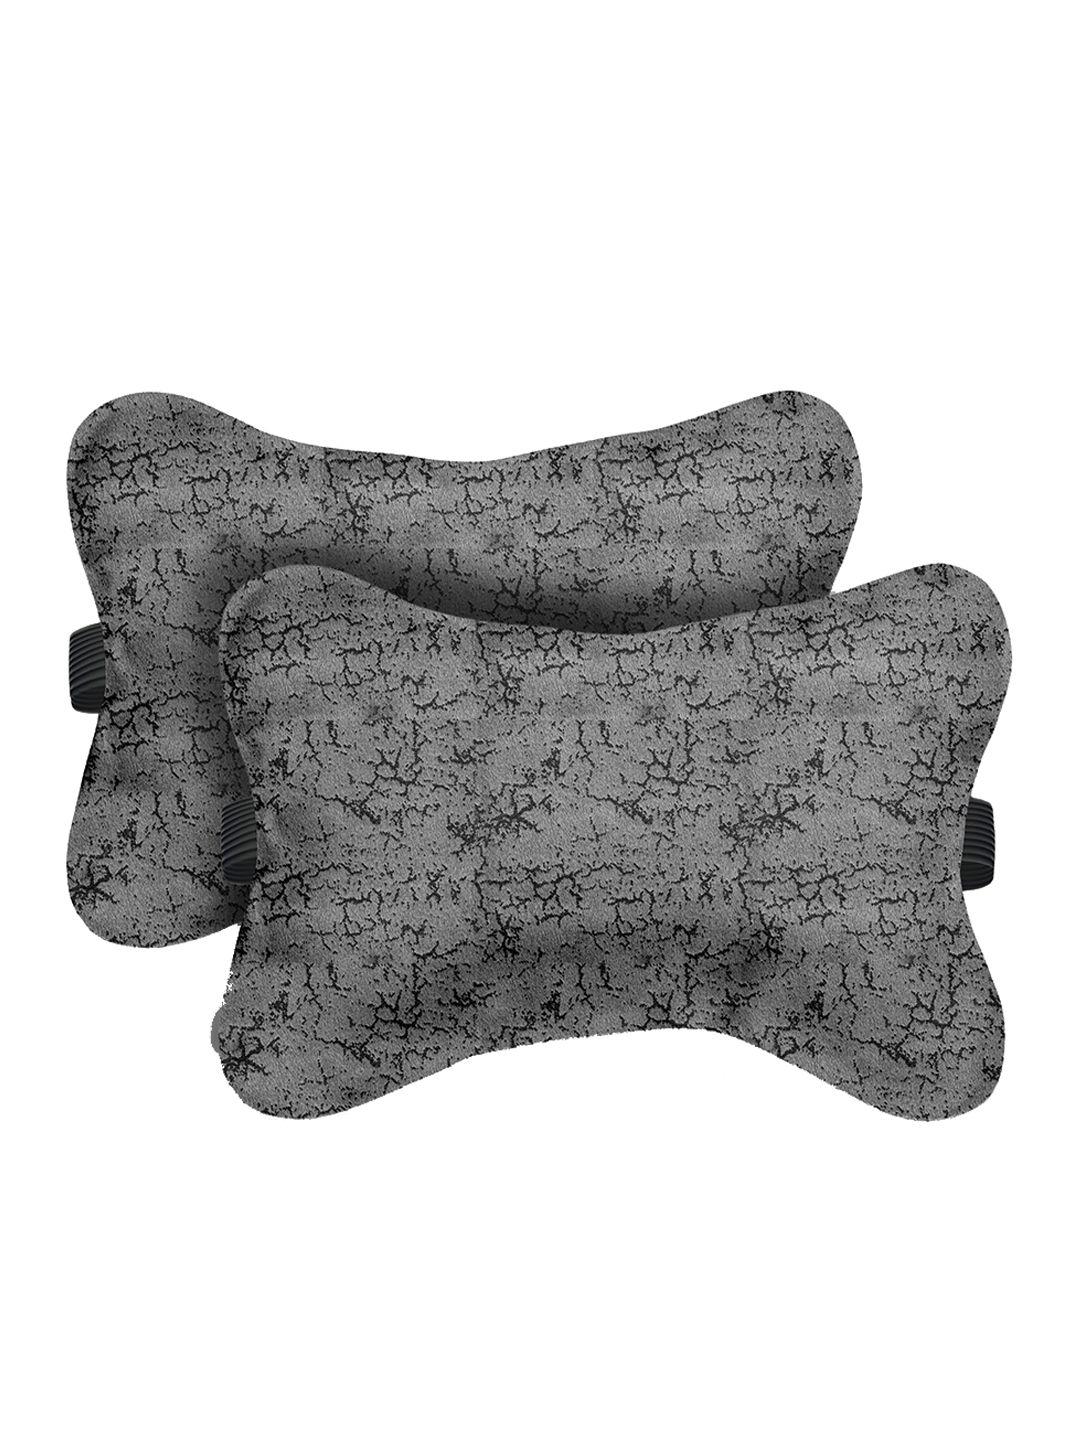 lushomes set of 2 self-design velvet neck rest pillows